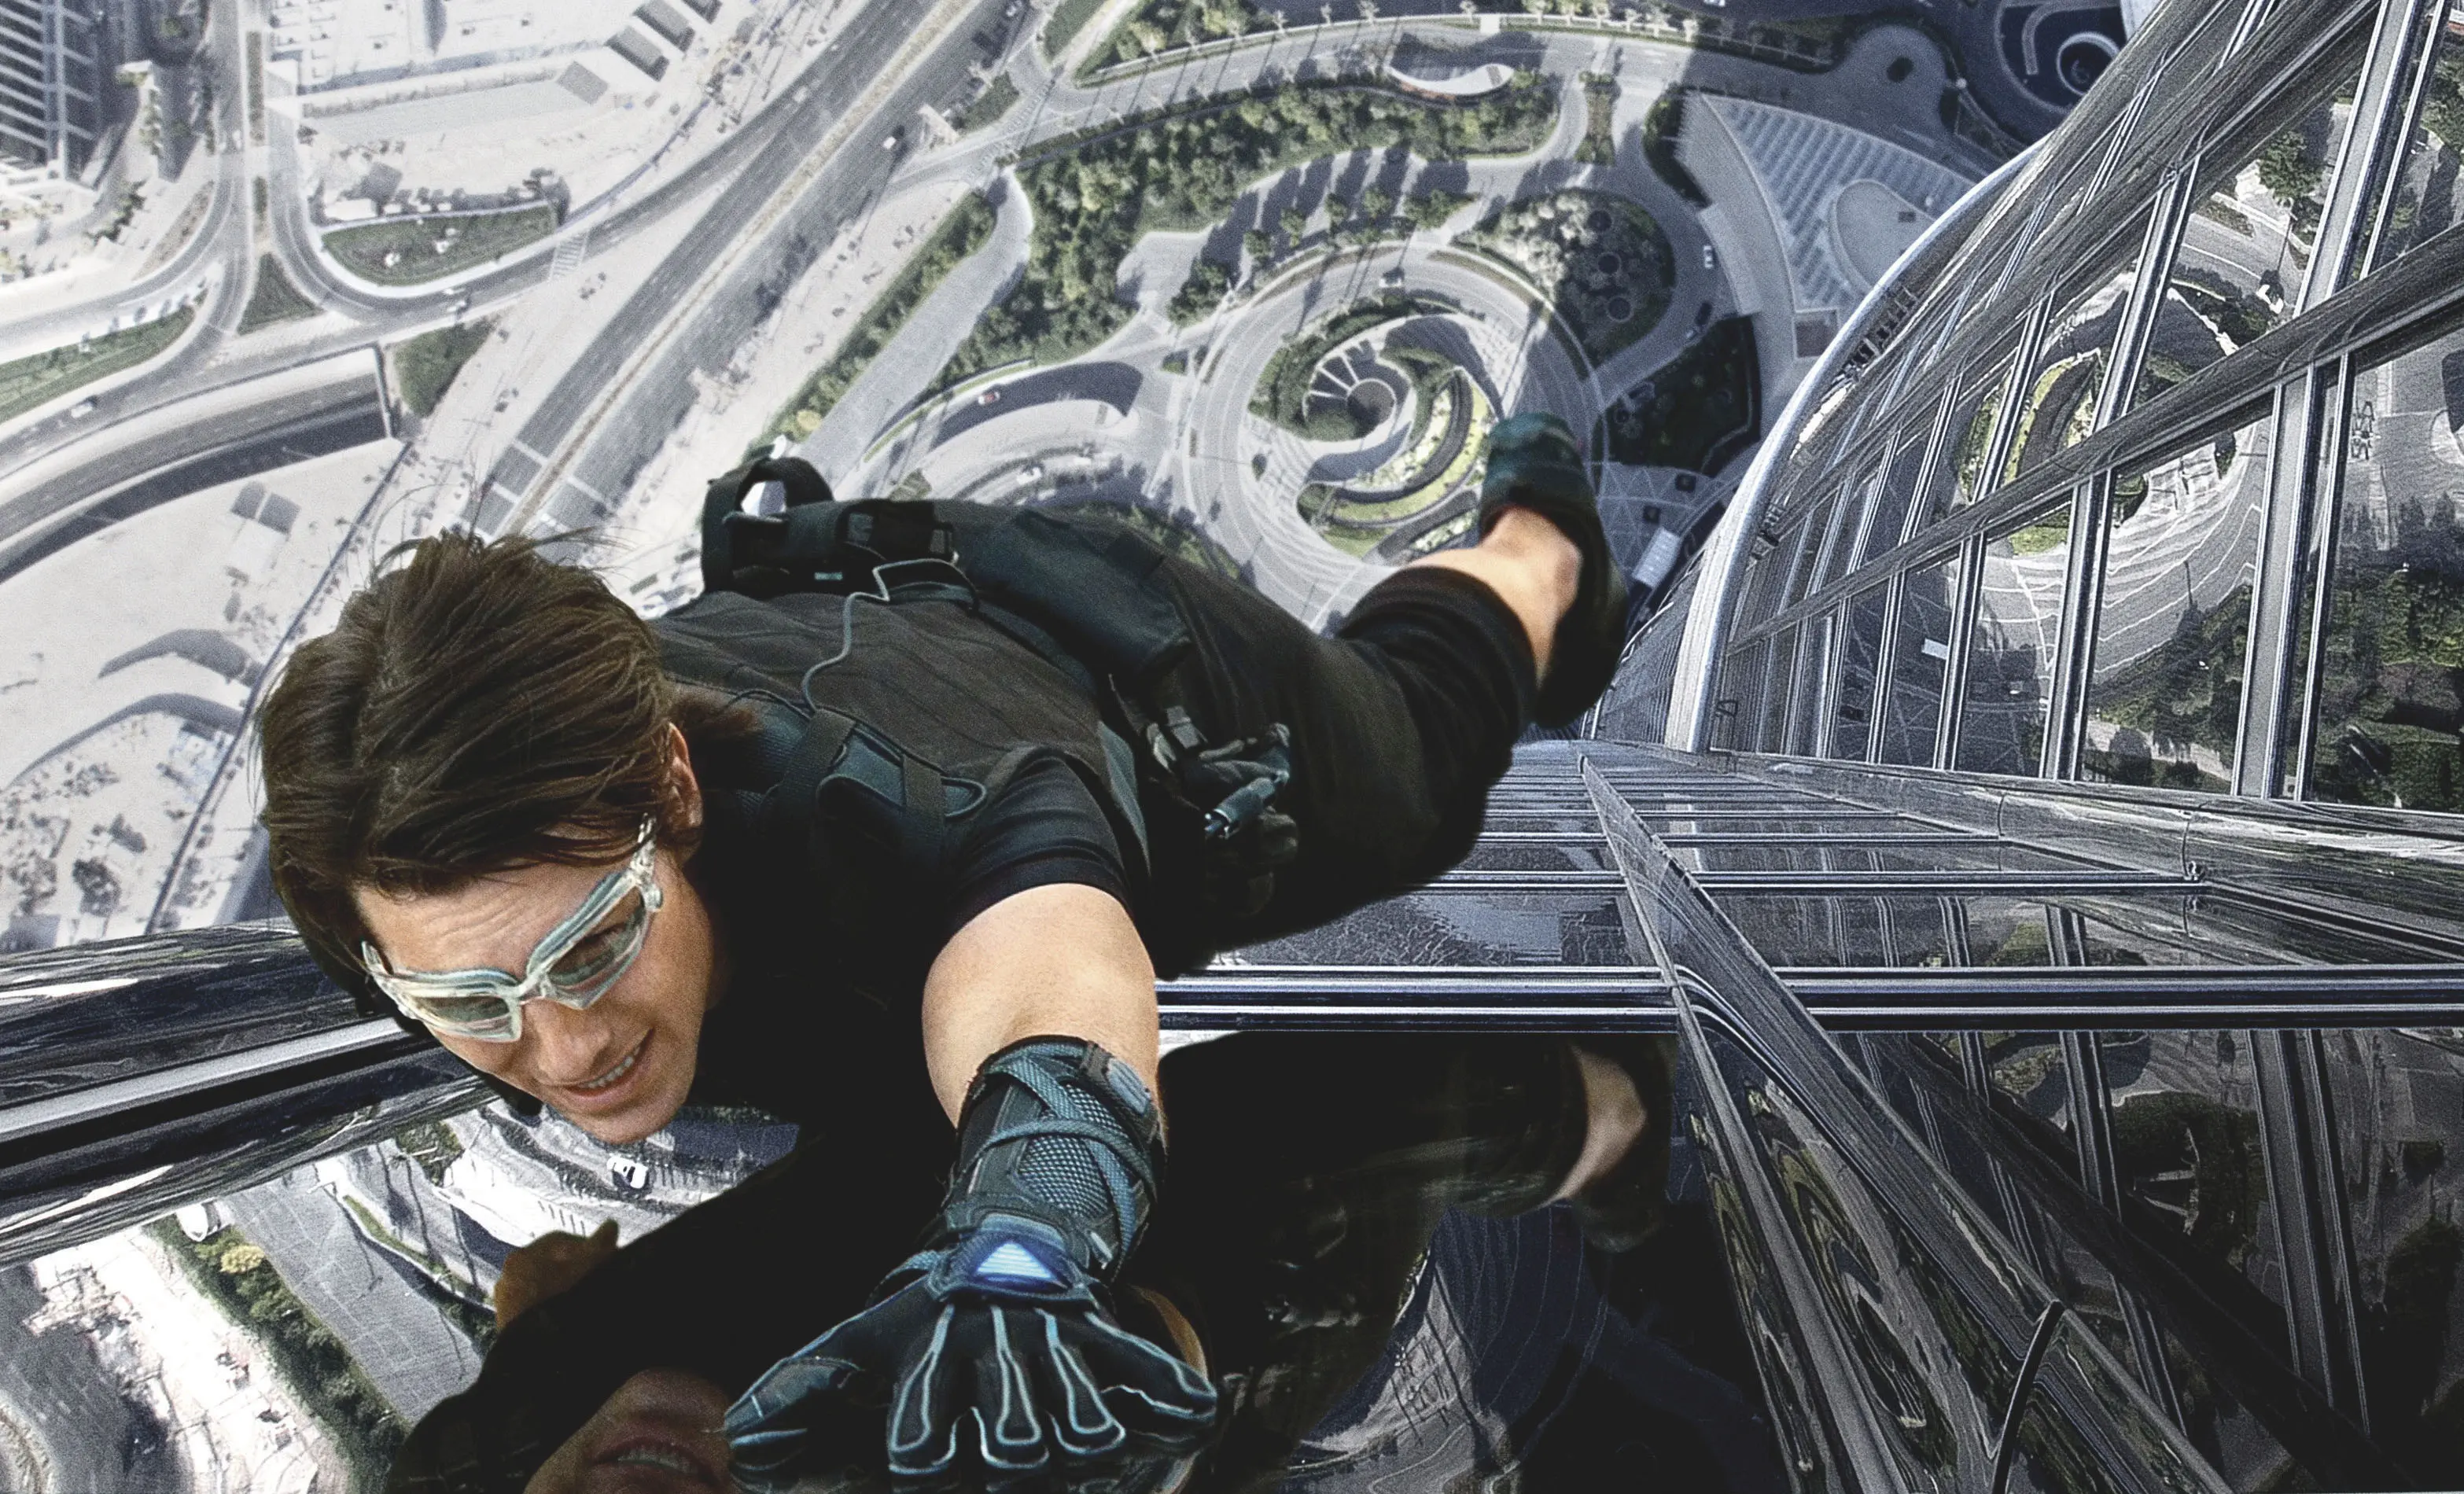 Tom Cruise rela latihan satu tahun demi sukseskan Mission Impossible 6. (Via: The Japan Times)